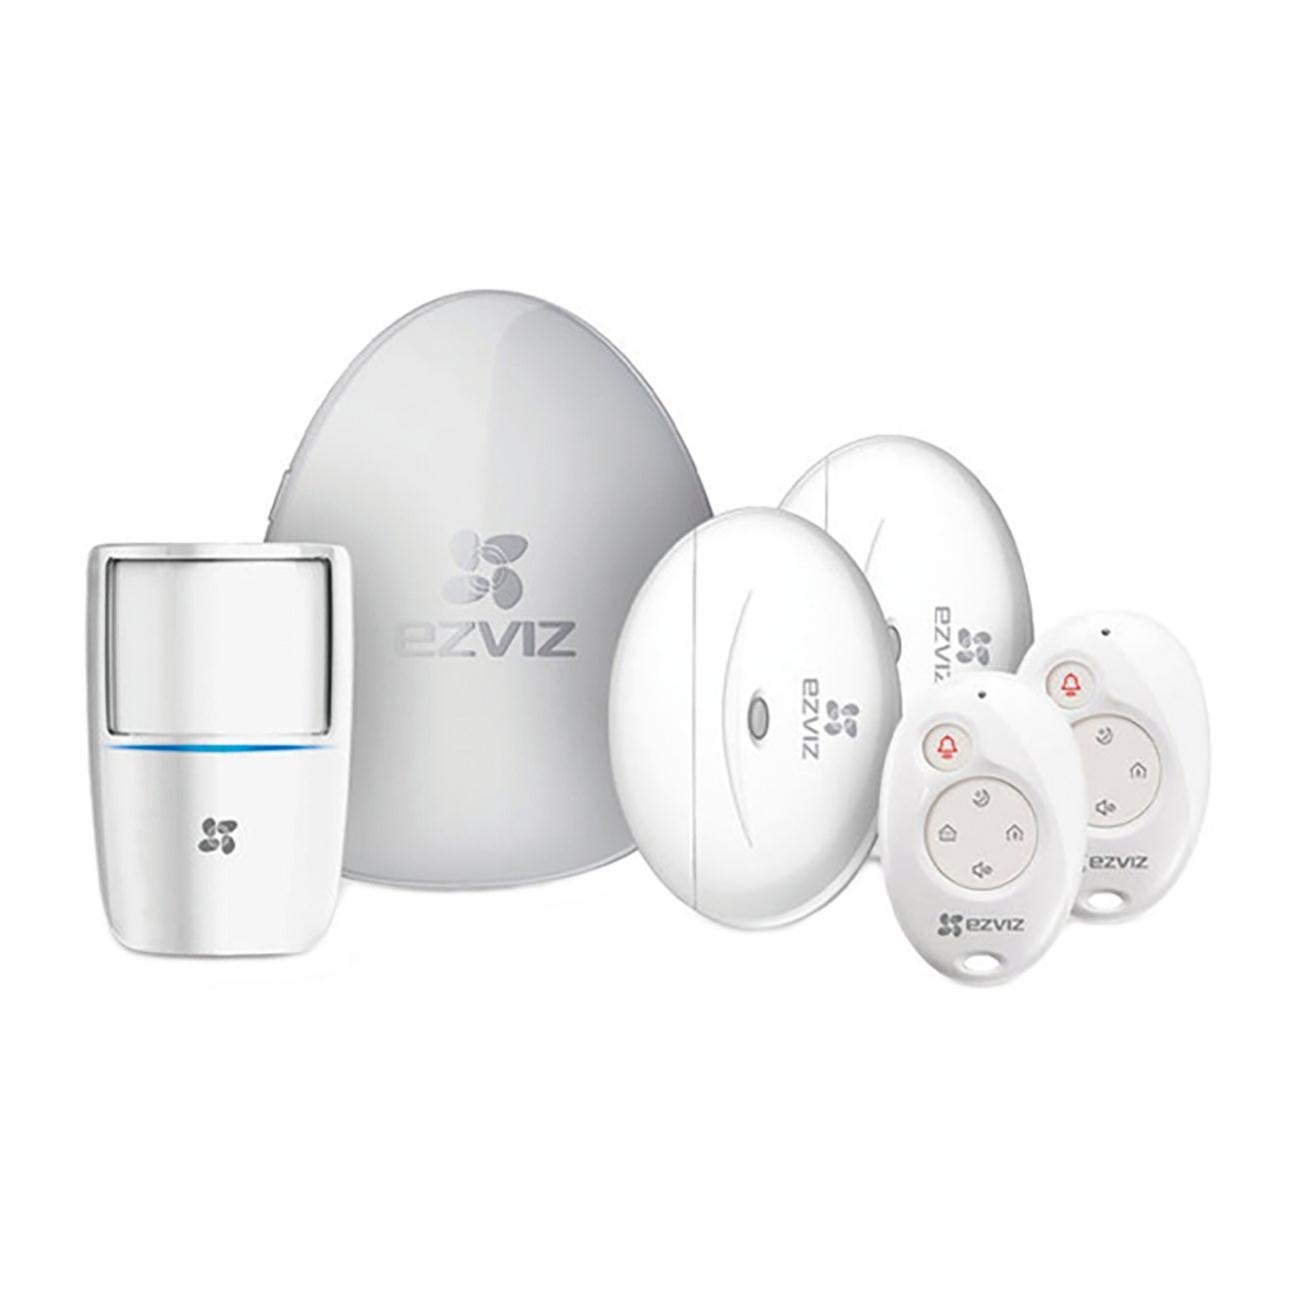 Sistema d'allarme EZVIZ A1 composto da Hub + Sensori bianco